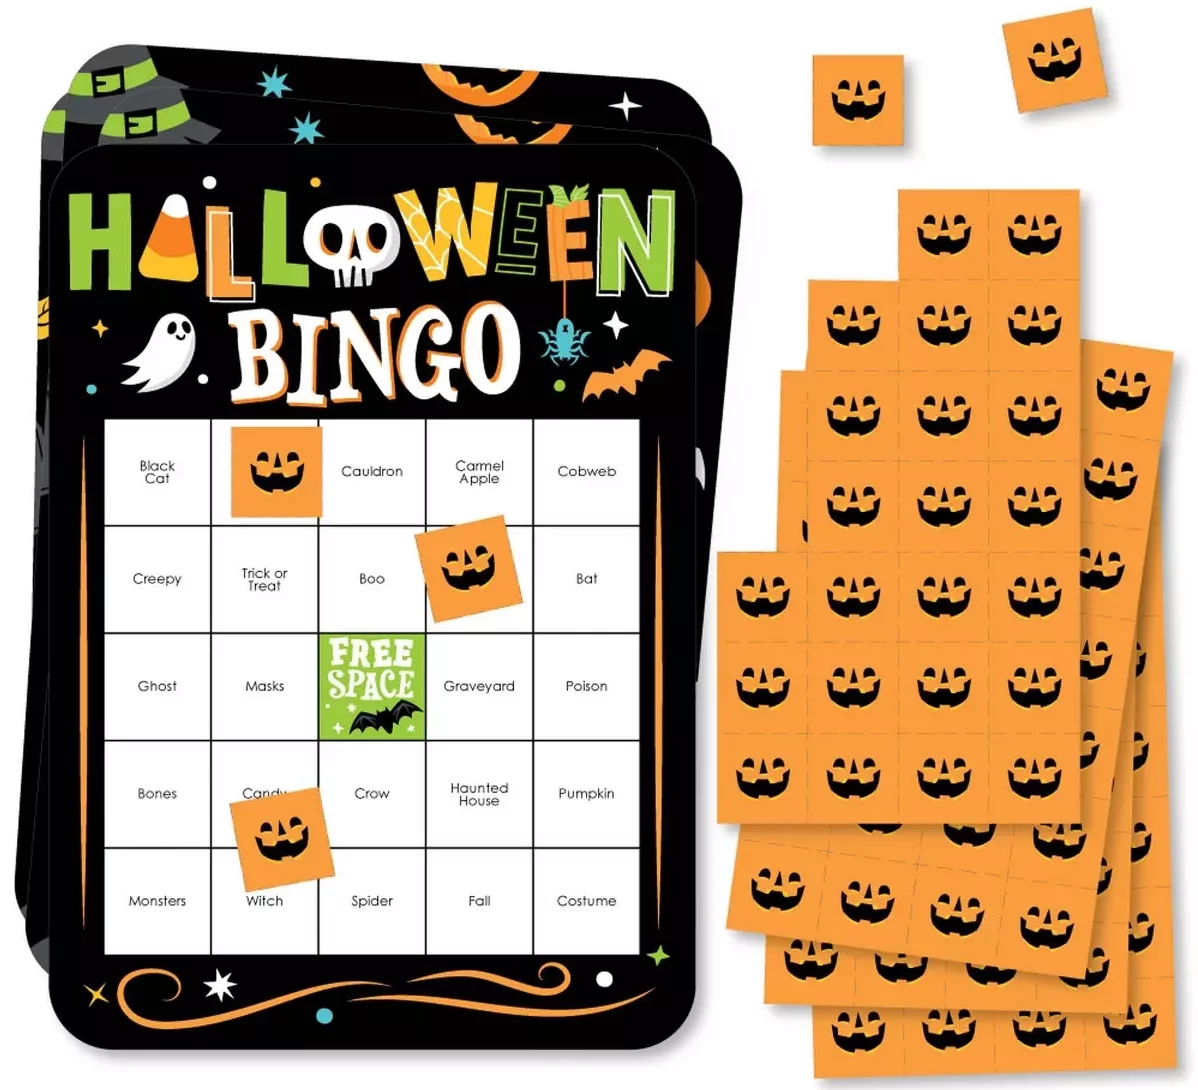 Halloween bingo game